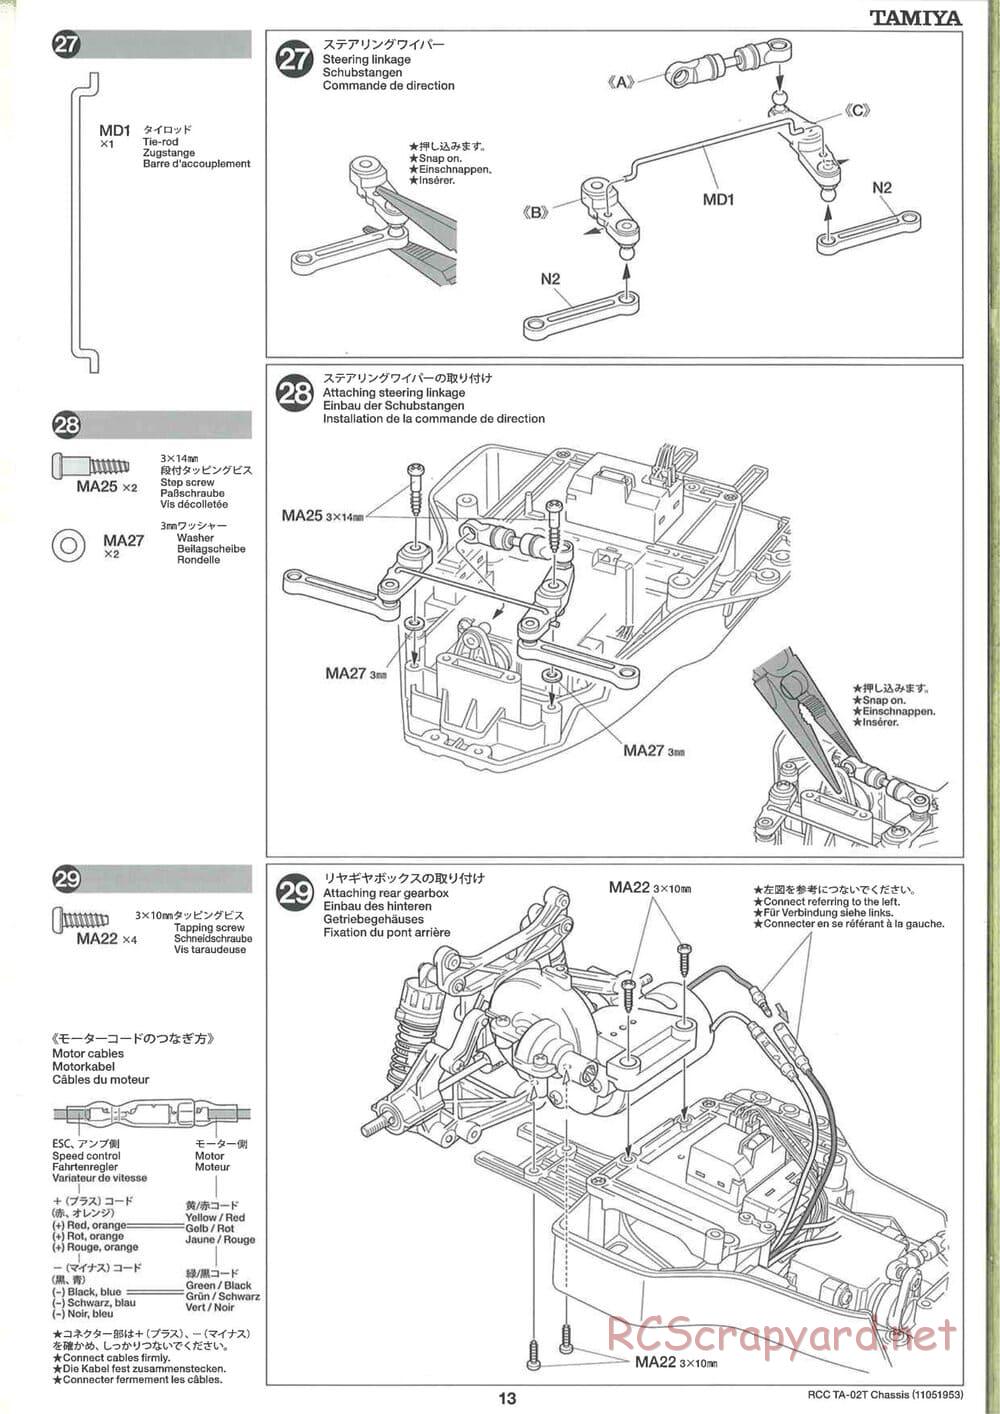 Tamiya - TA-02T Chassis - Manual - Page 13